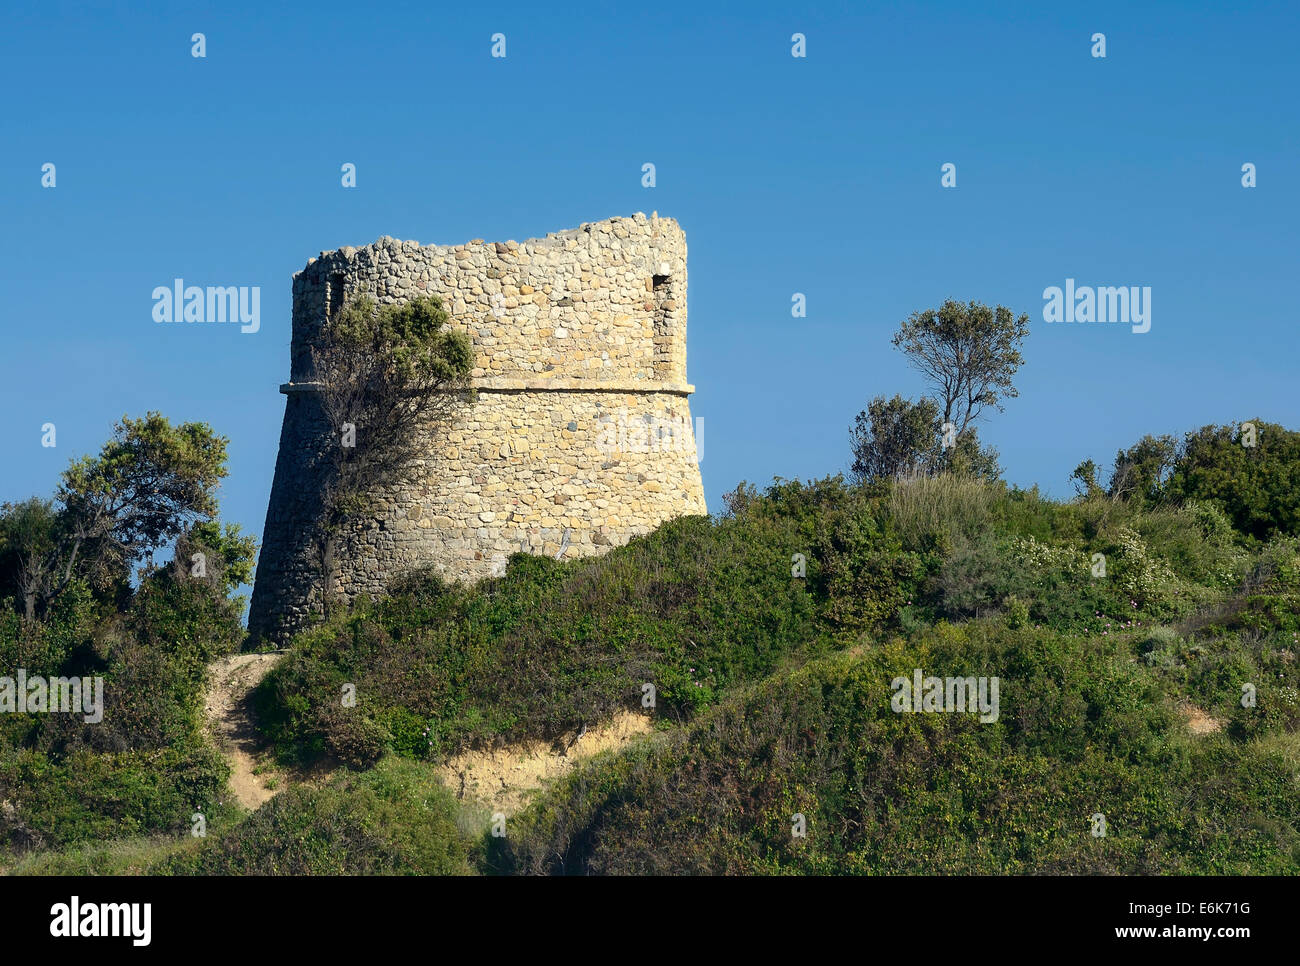 Edad, torre Genoese en ruinas, torre redonda, cerca de Aléria, Córcega, Francia Foto de stock